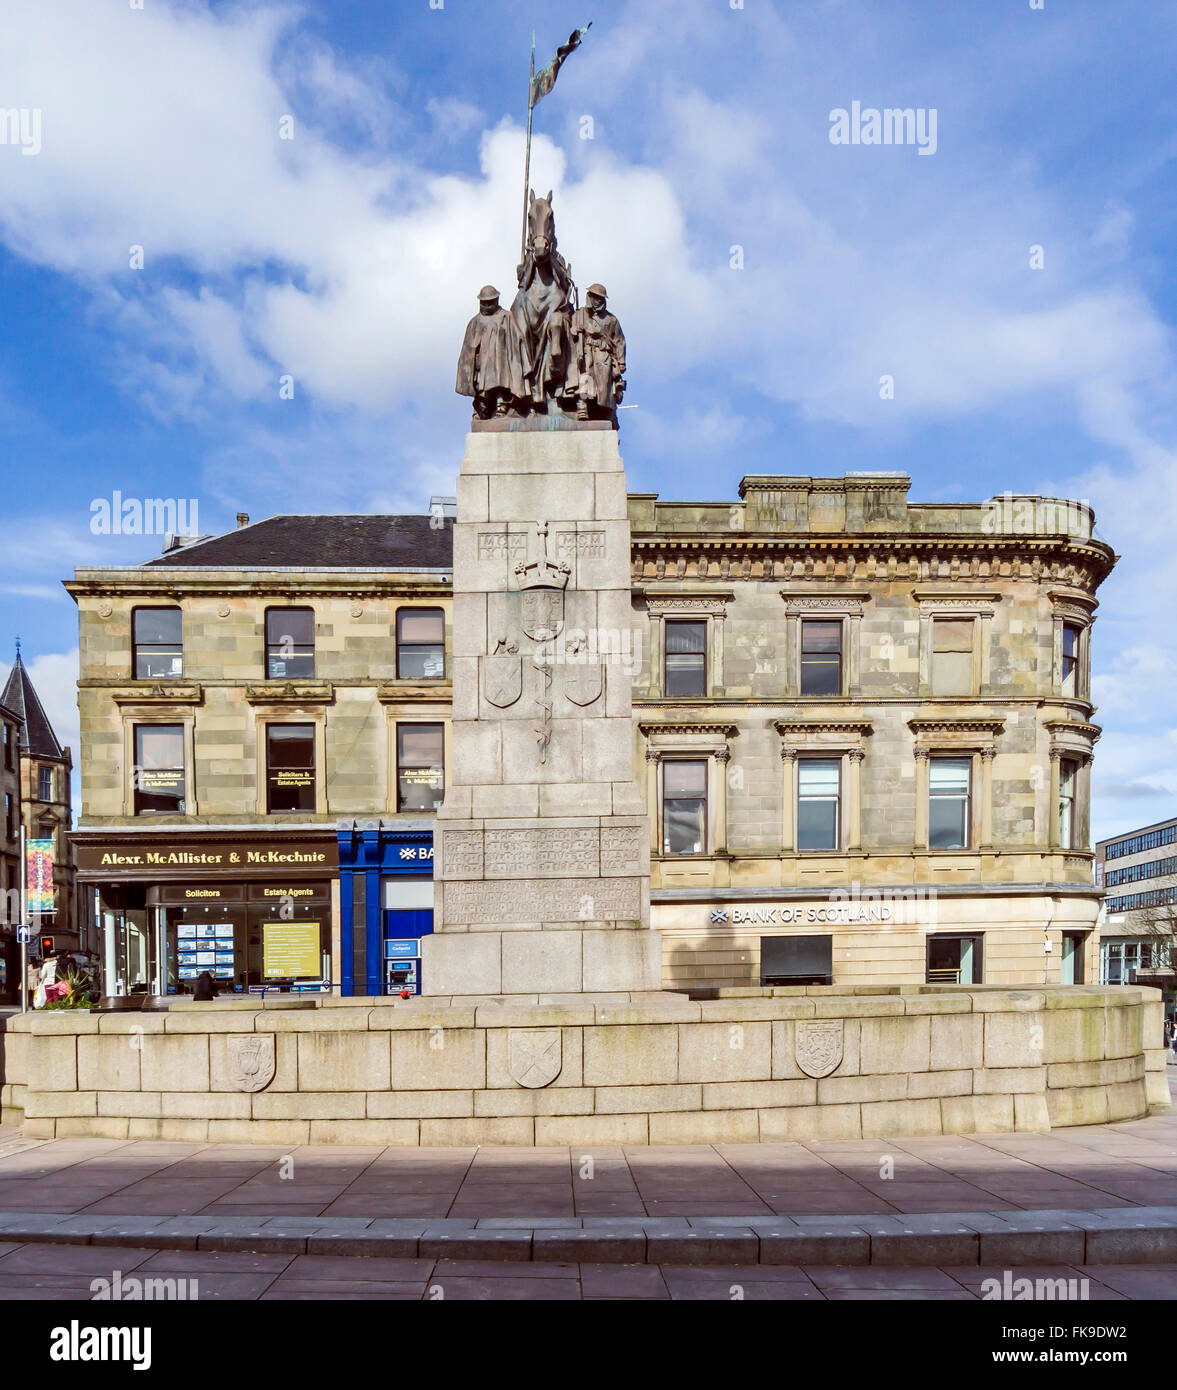 Monument commémoratif de guerre dans le centre de Paisley Ecosse Rrenfrewshire Banque D'Images